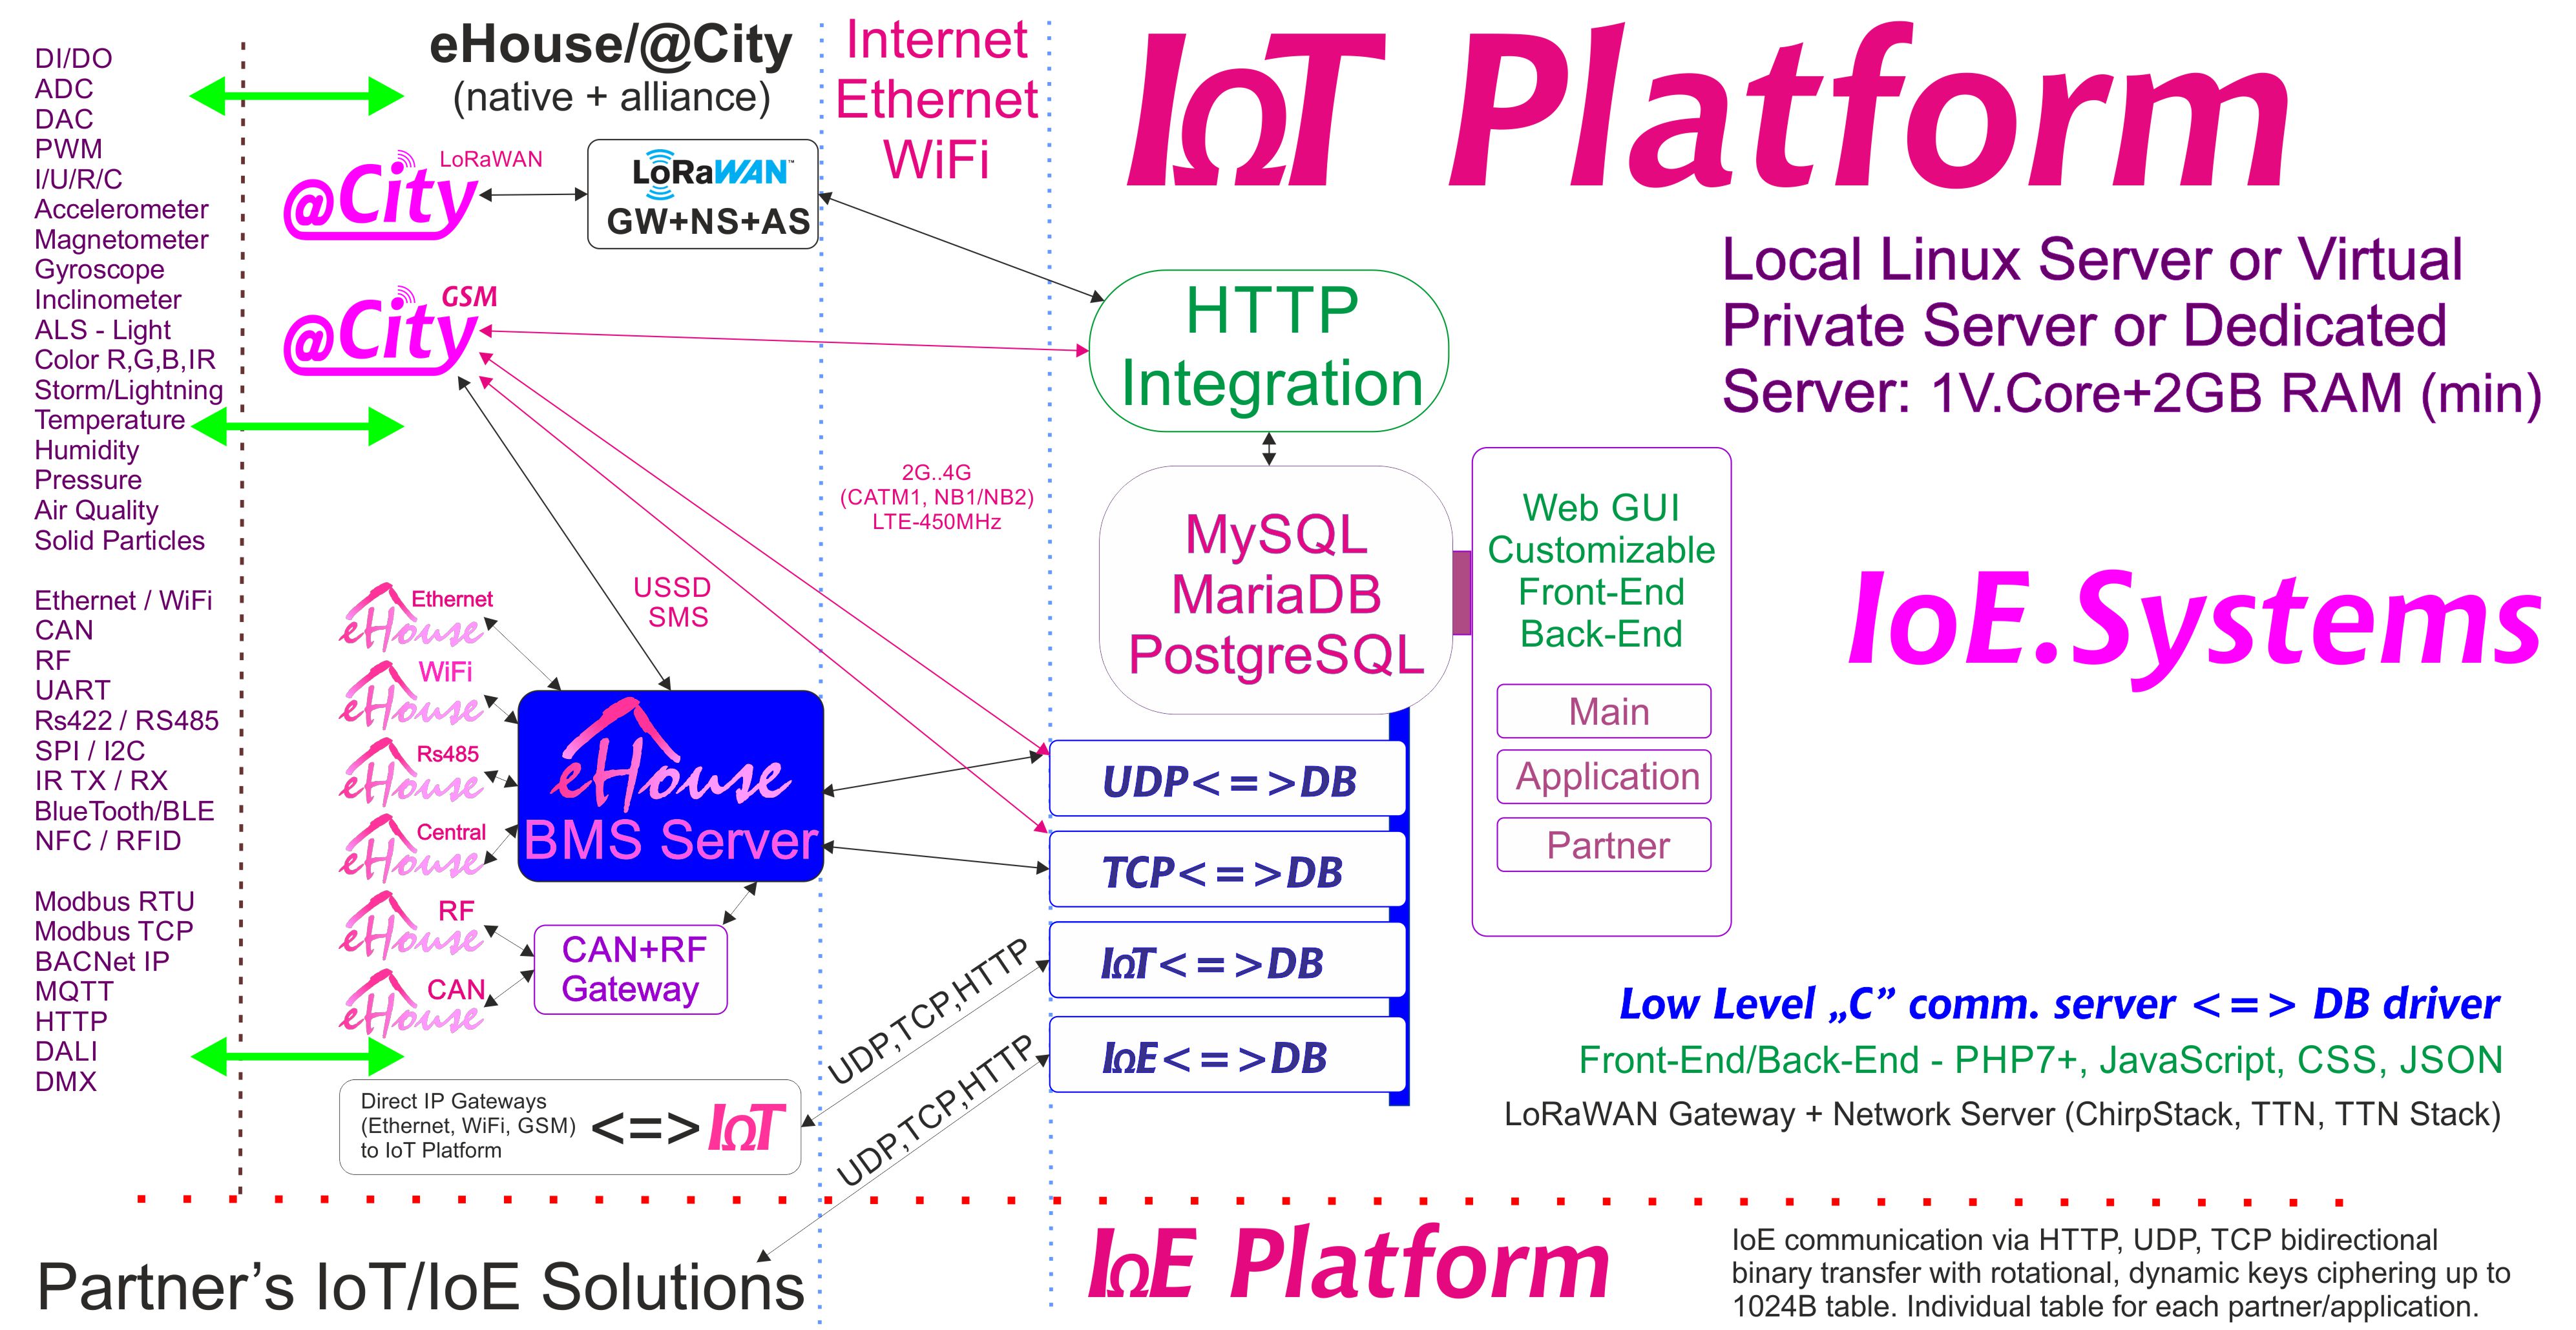 eHouse, eCity Server Software BAS, BMS, IoE, IoT Systems da Platform